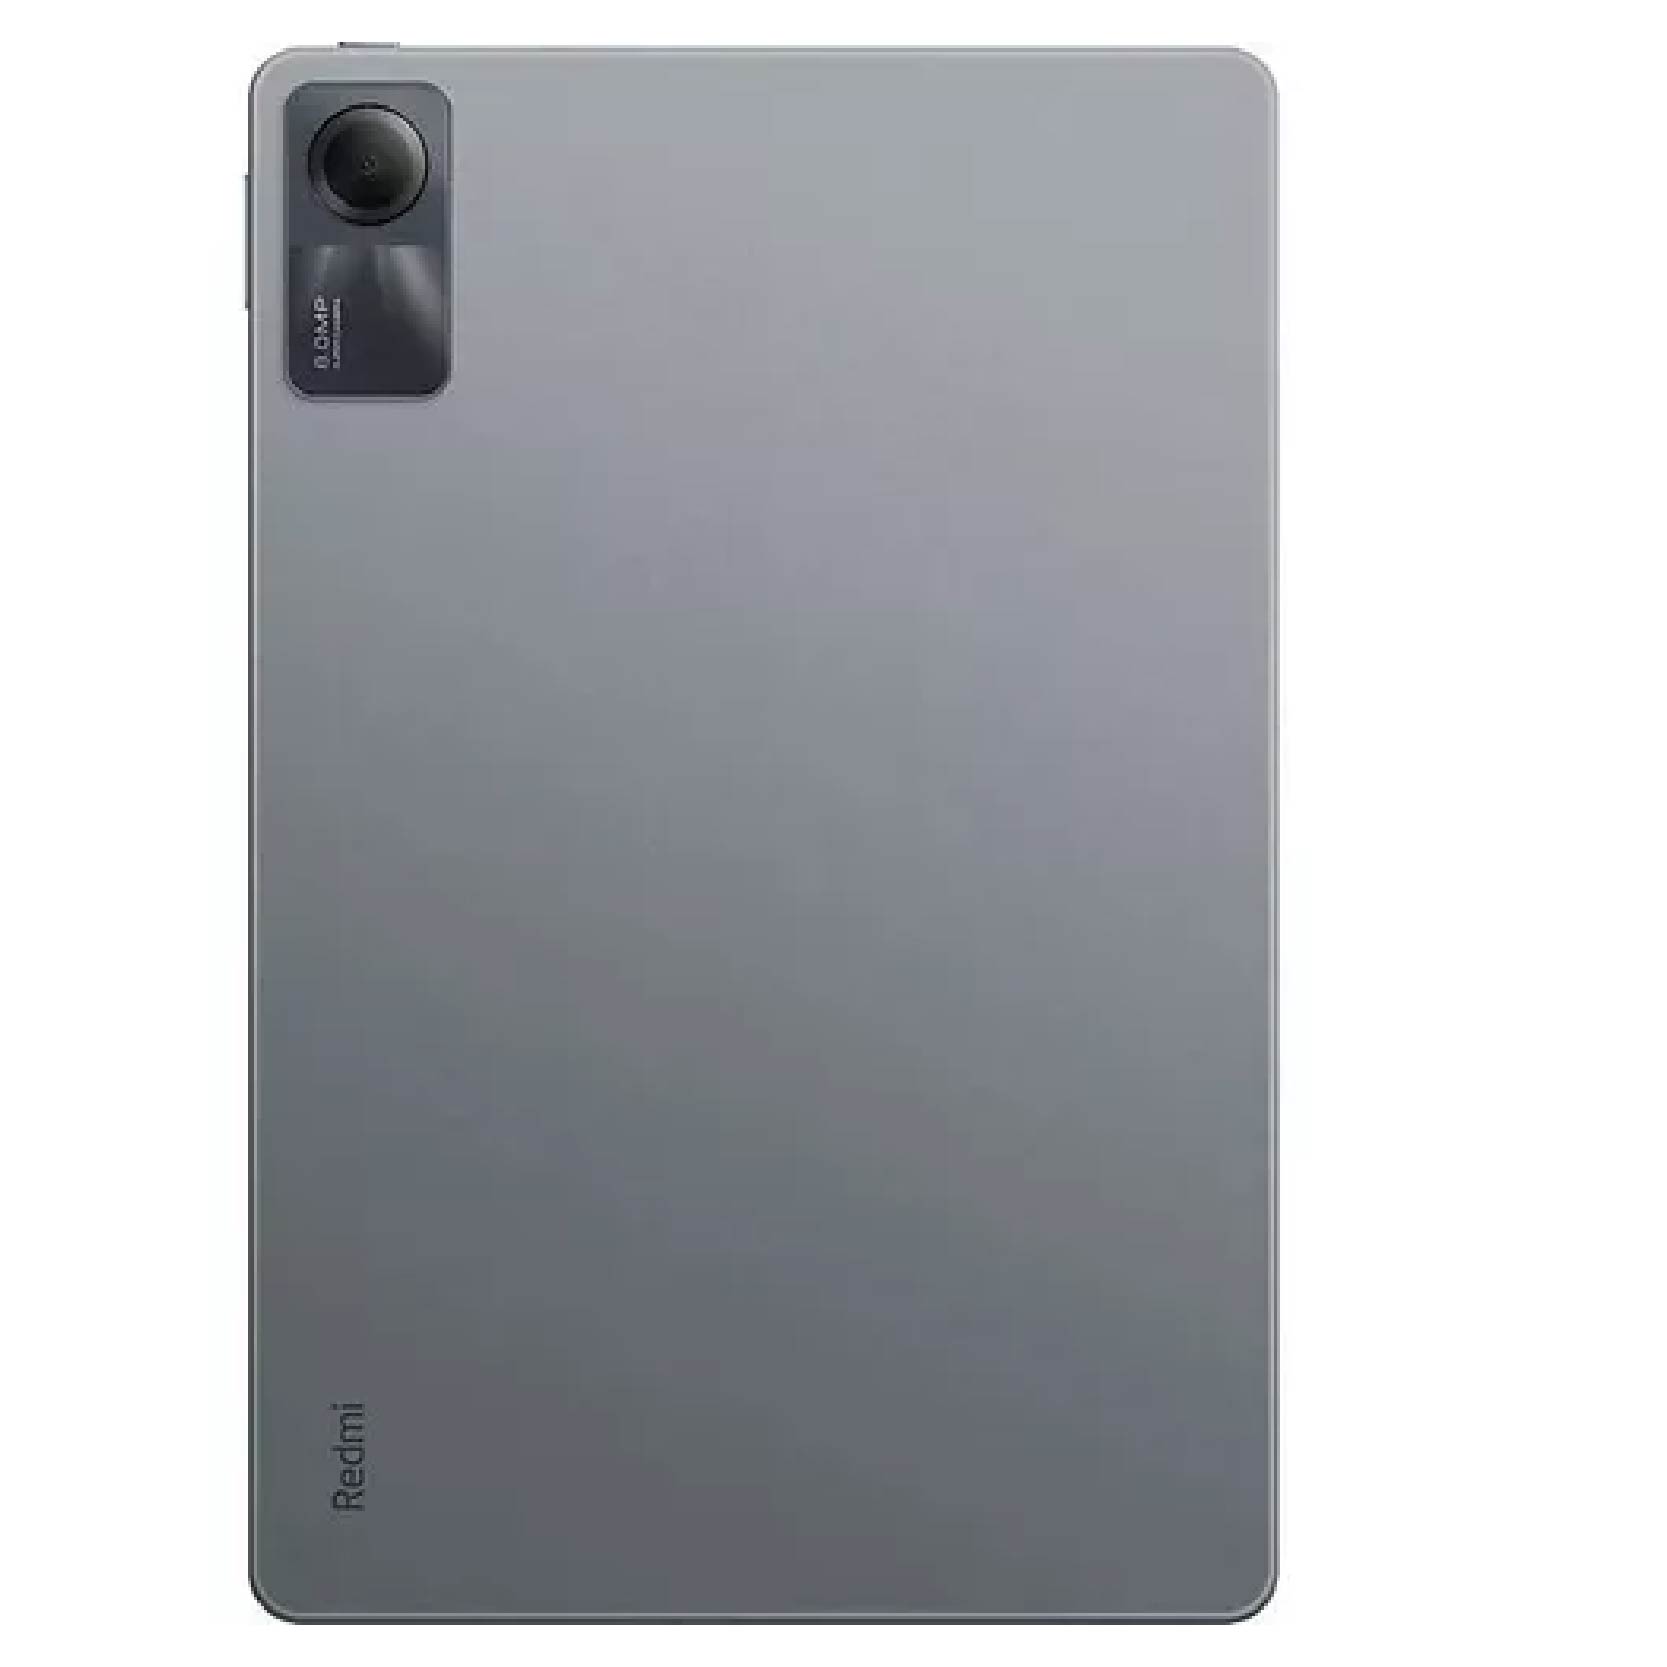 Tablet Redmi Pad Se 128GB - Tienda de Celulares Smartphones